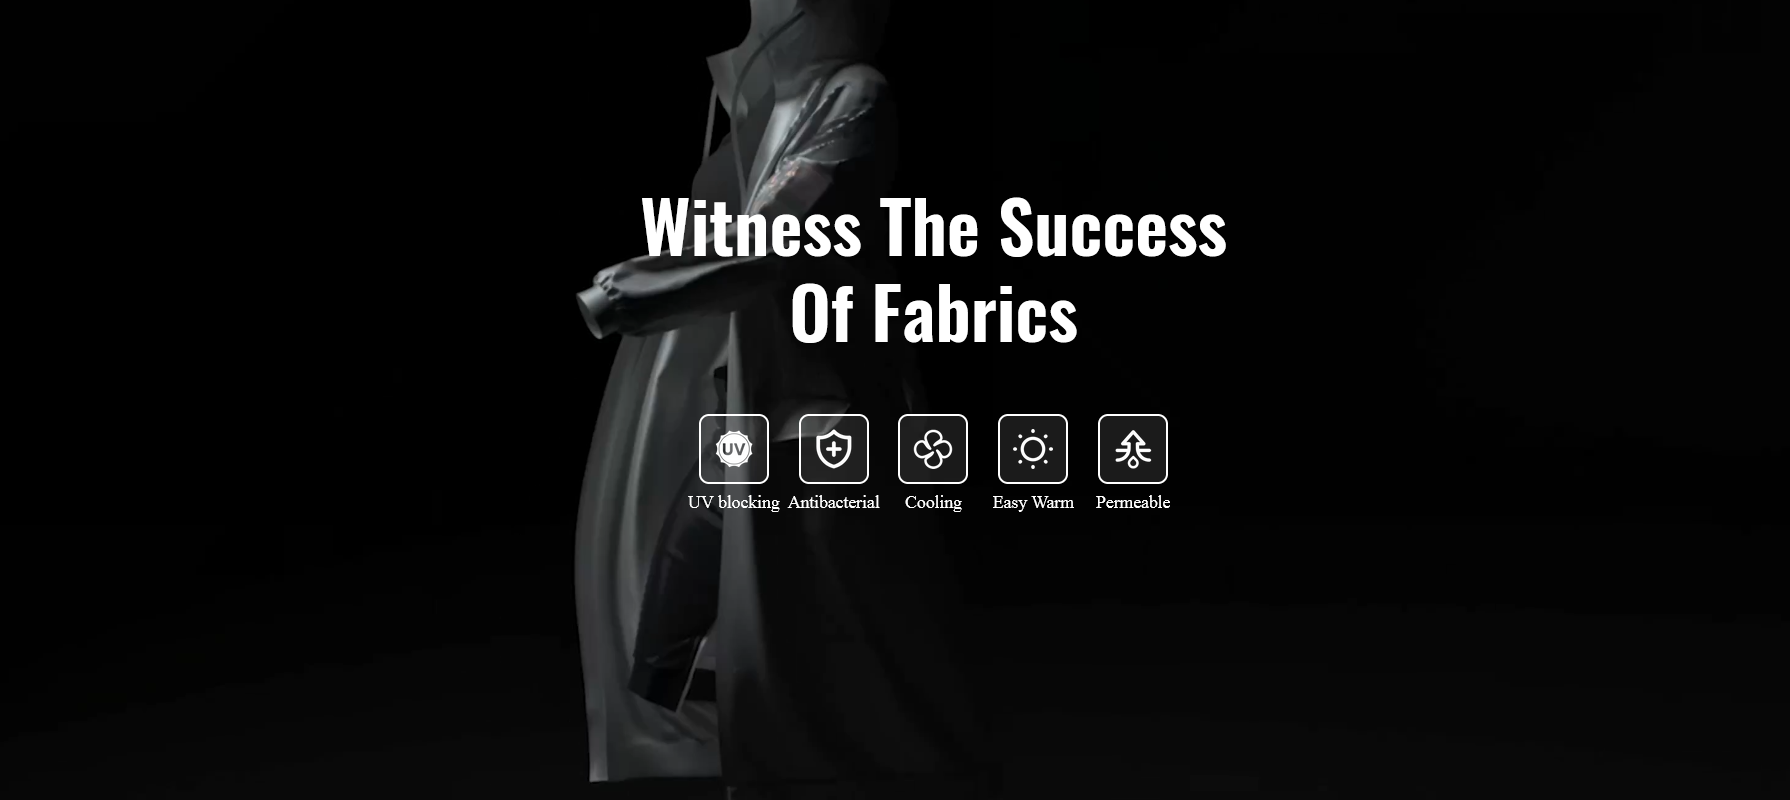 Wujiang Fuhua Fabric Co., Ltd